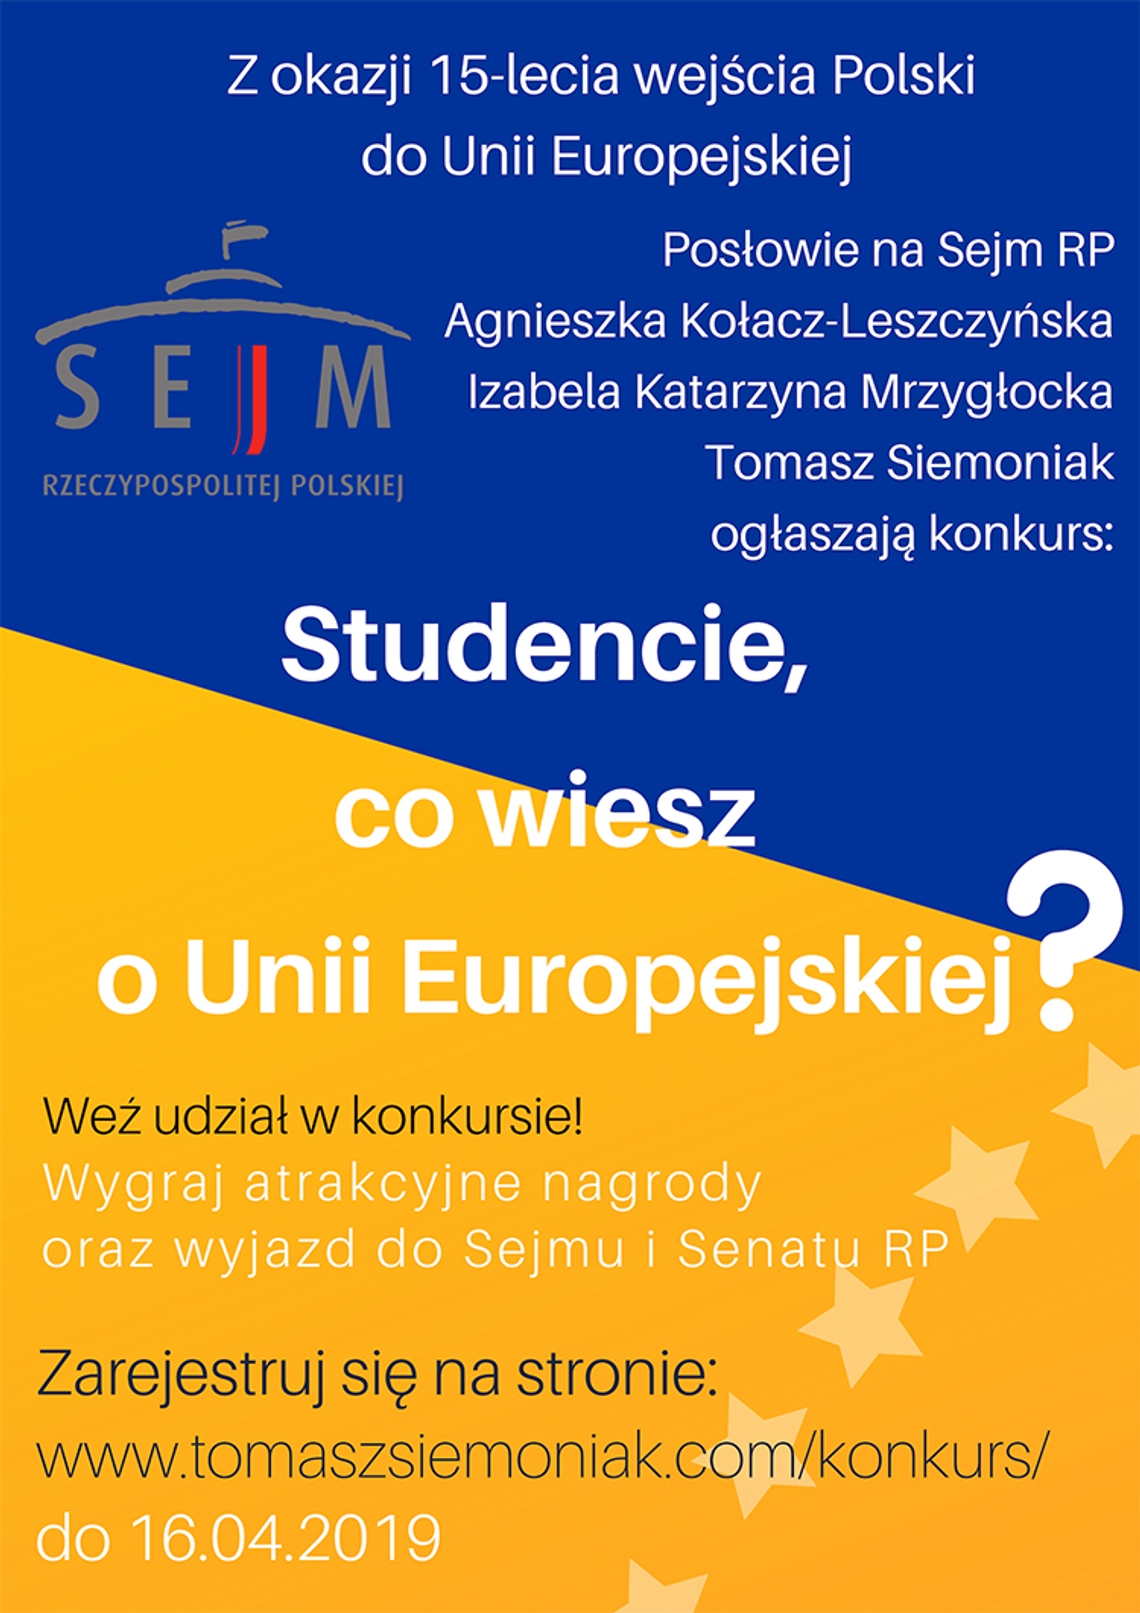 STUDENCIE, CO WIESZ O UNII EUROPEJSKIEJ?